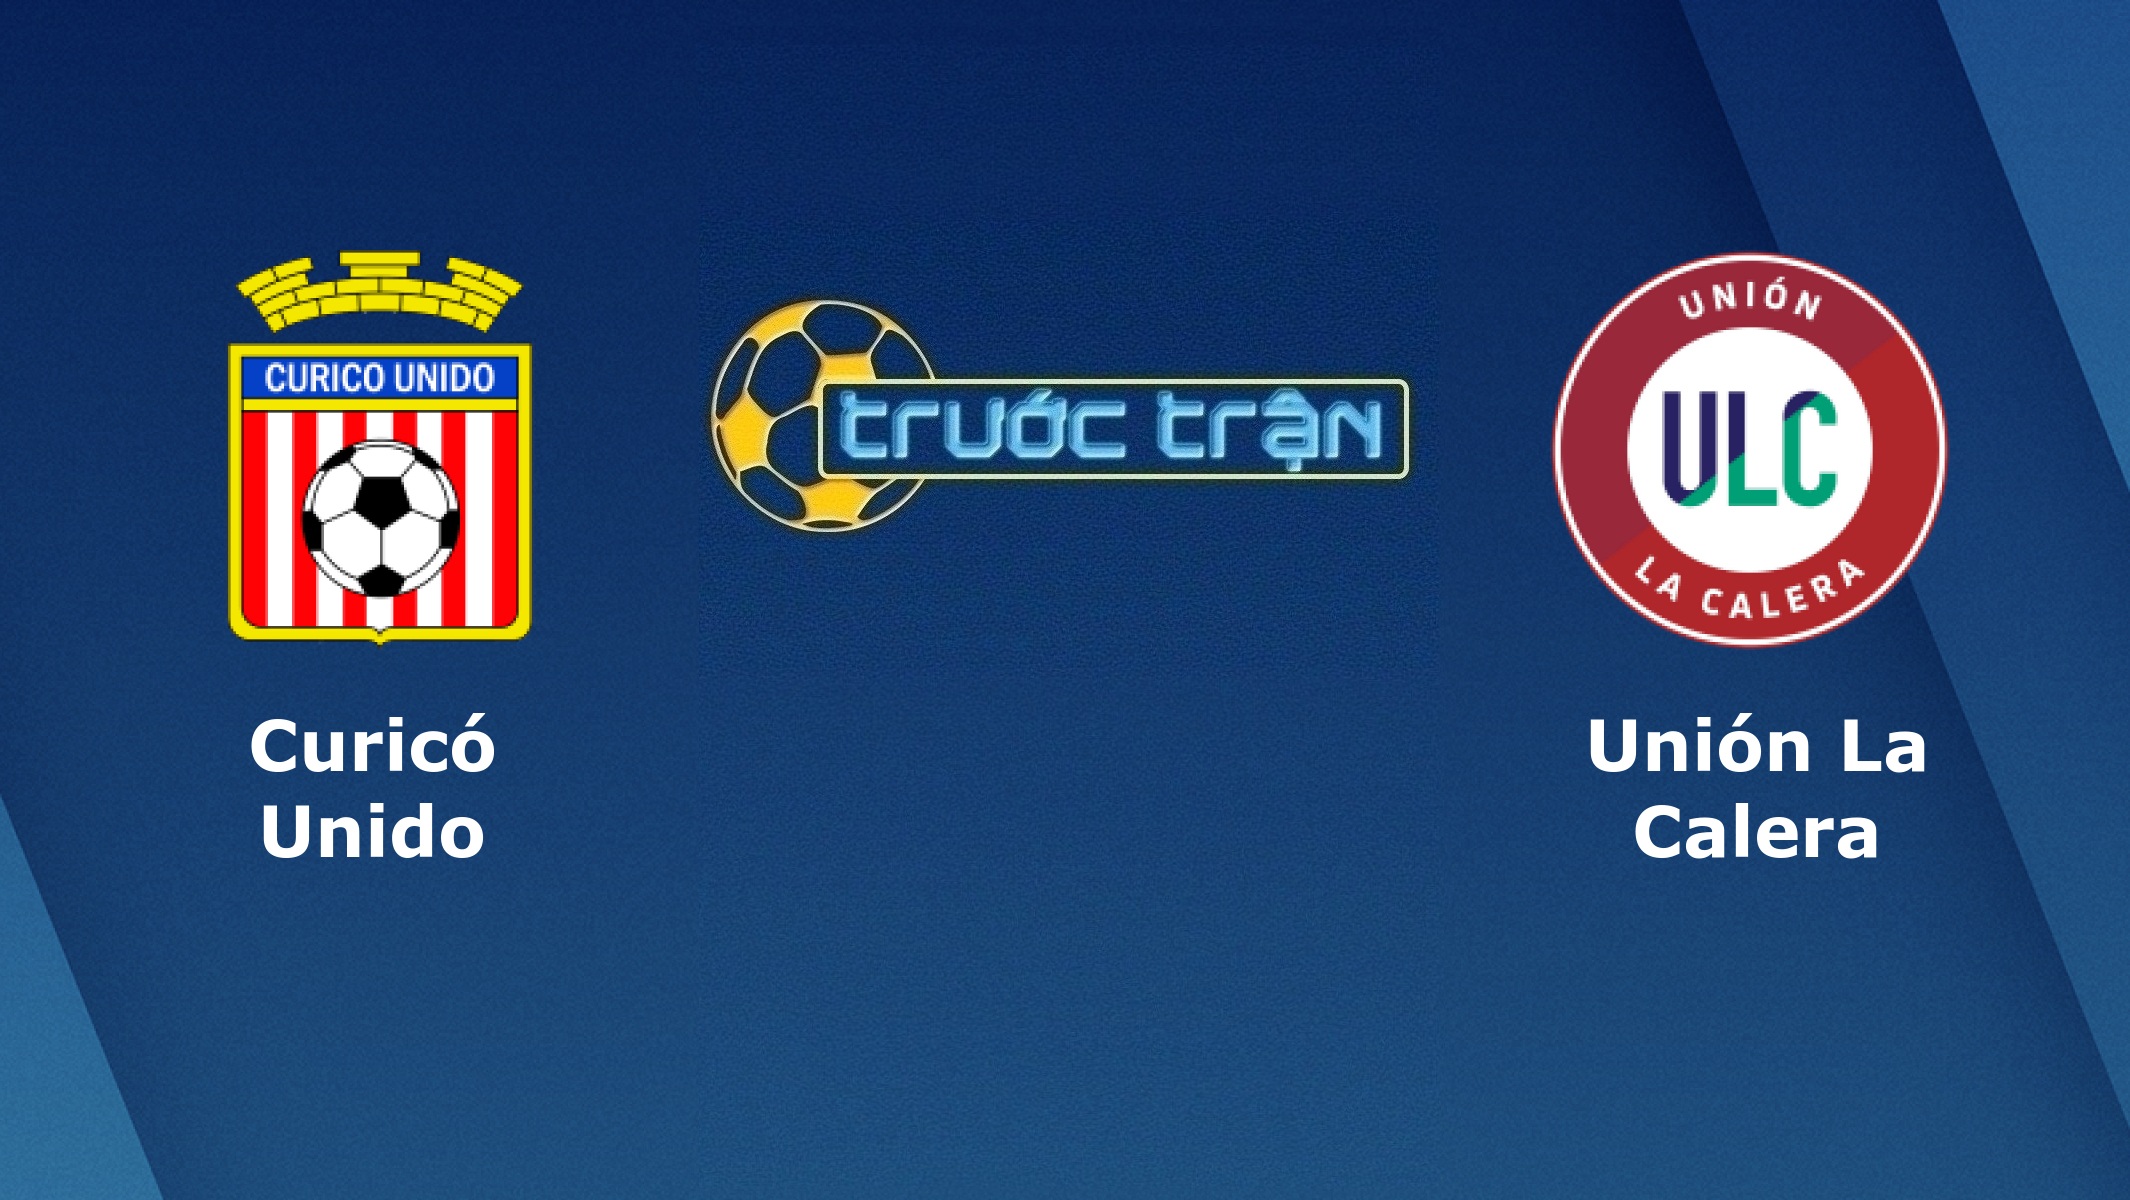 Curico Unido vs Union La Calera – Tip kèo bóng đá hôm nay – 17/03